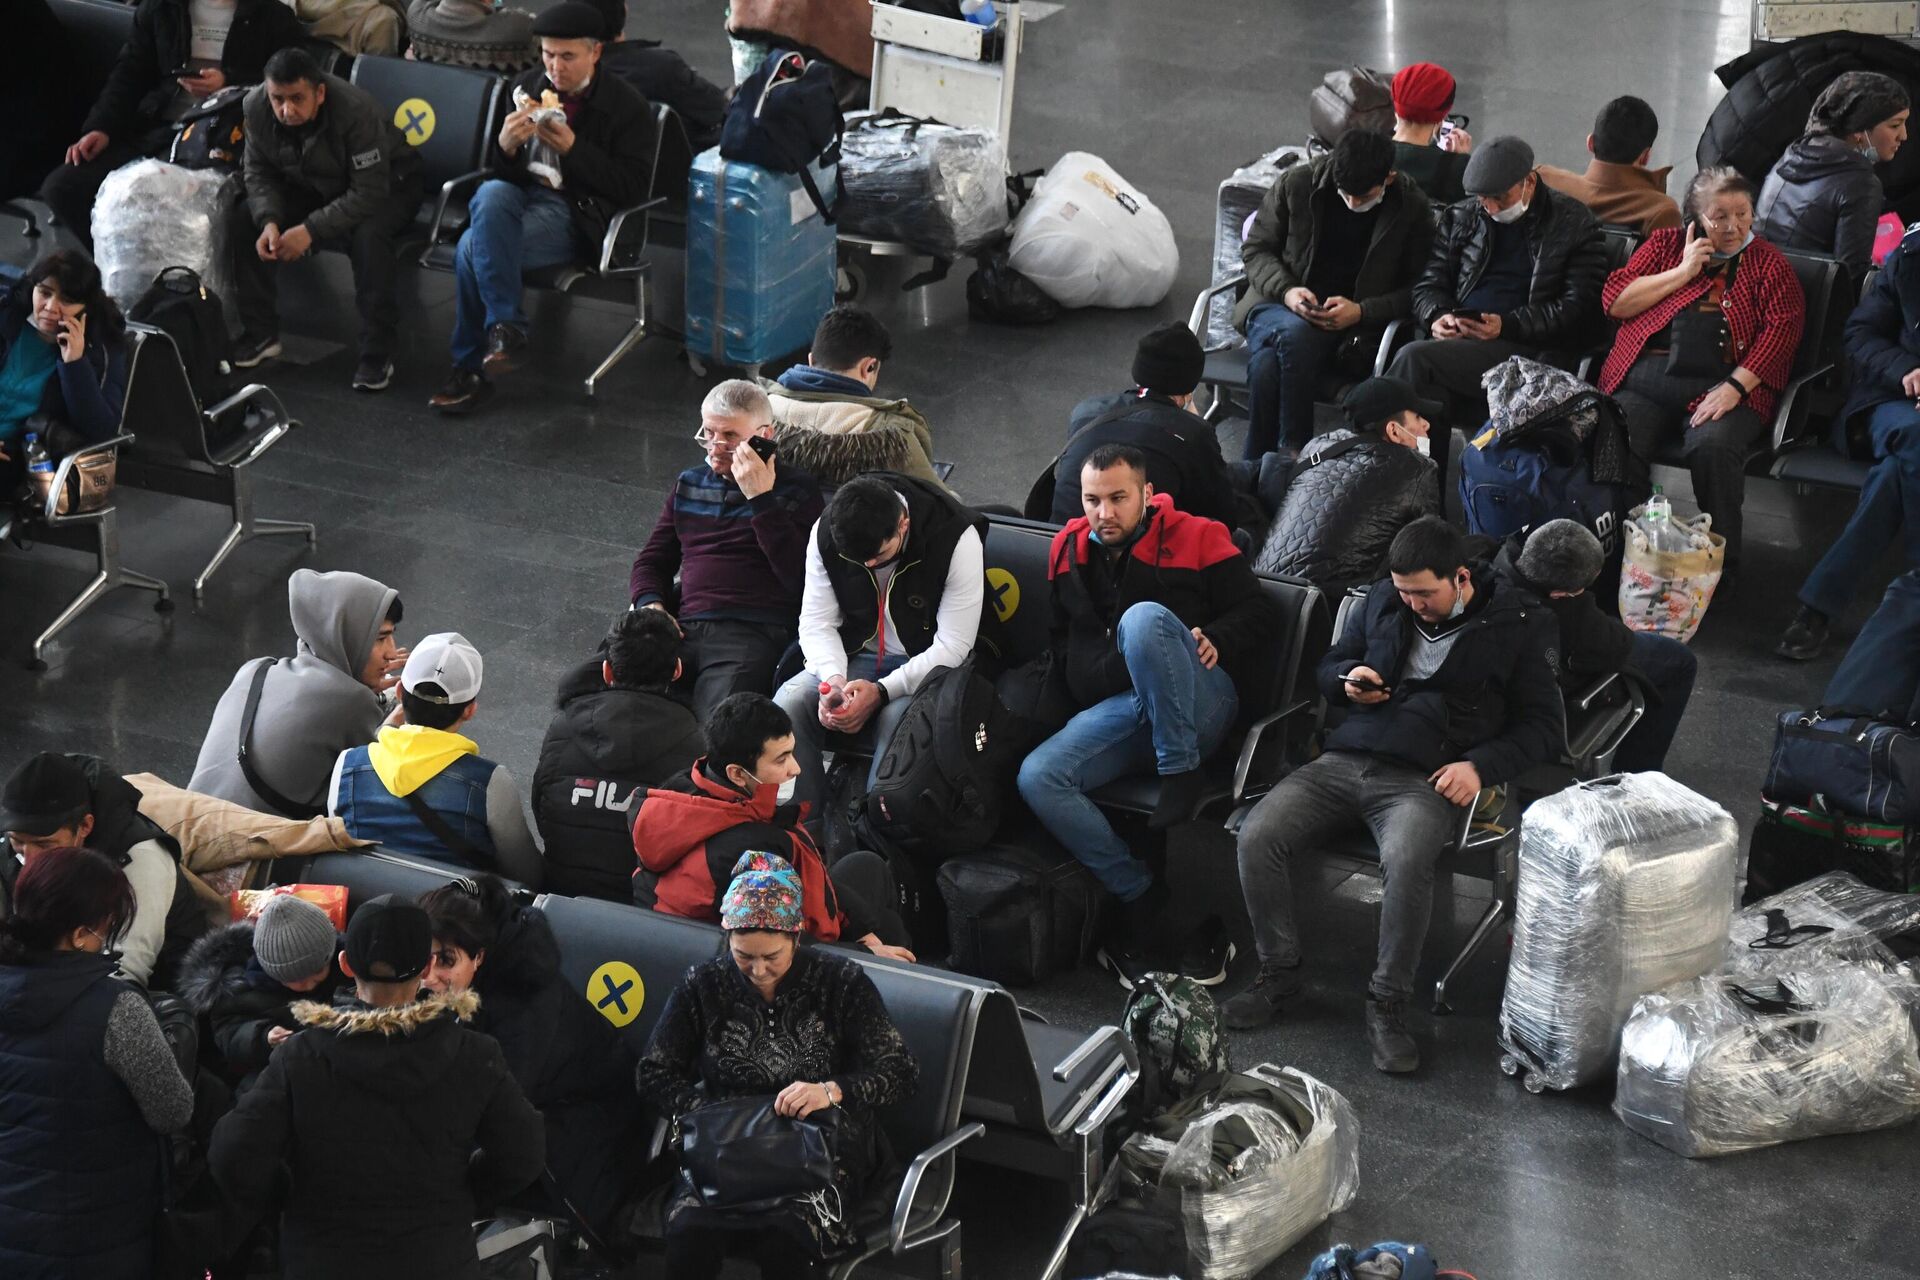 Риа новости первый. Ситуации в аэропорту. Последние события в Москве. Люди в зале ожидания. Российские туристы.